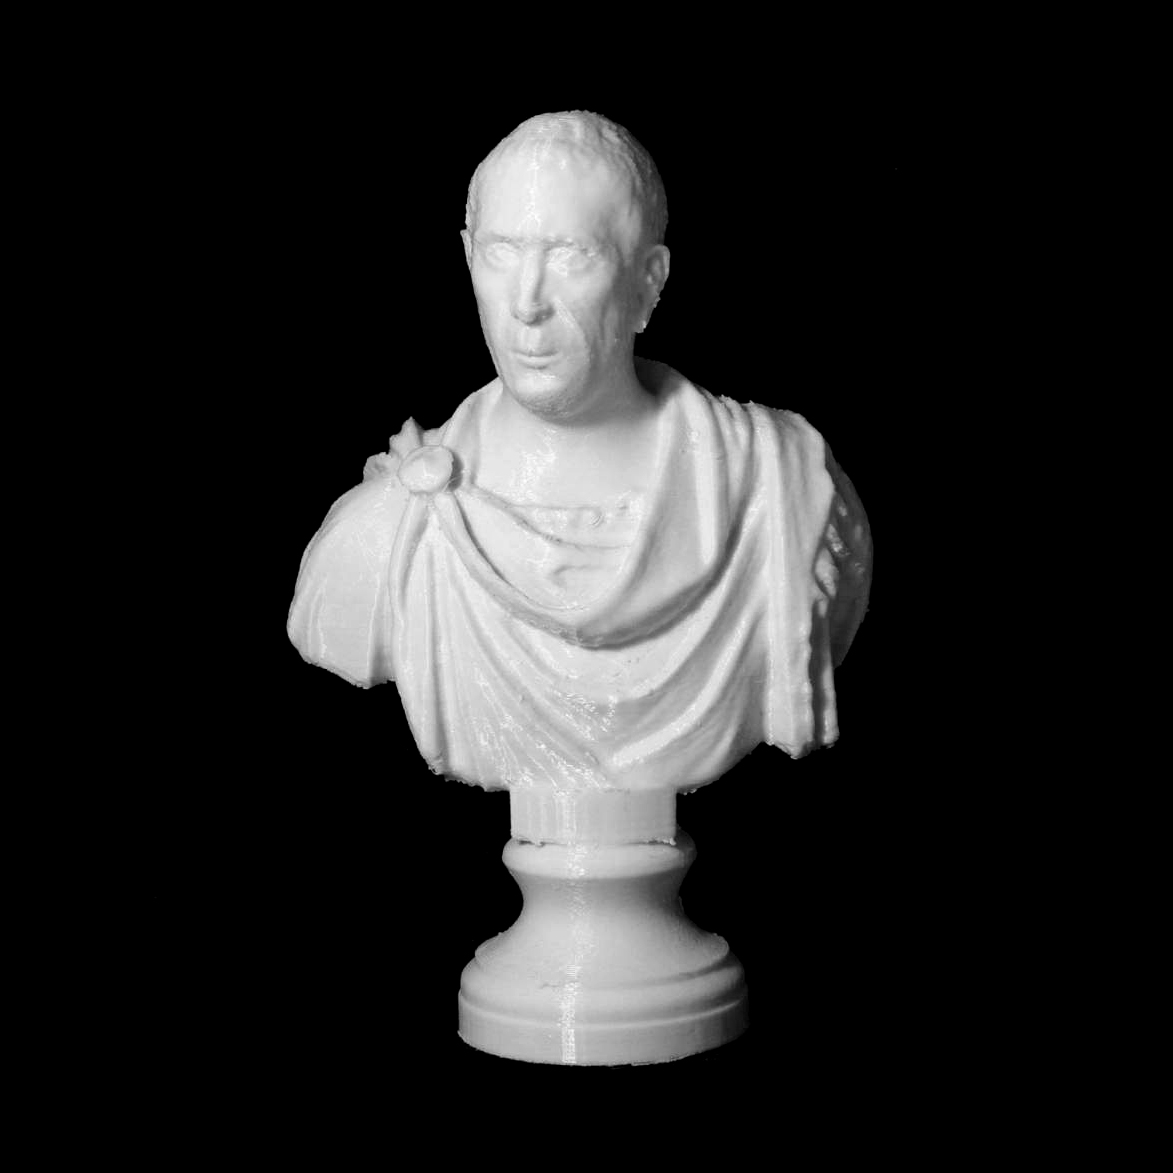 Quintus Cicero